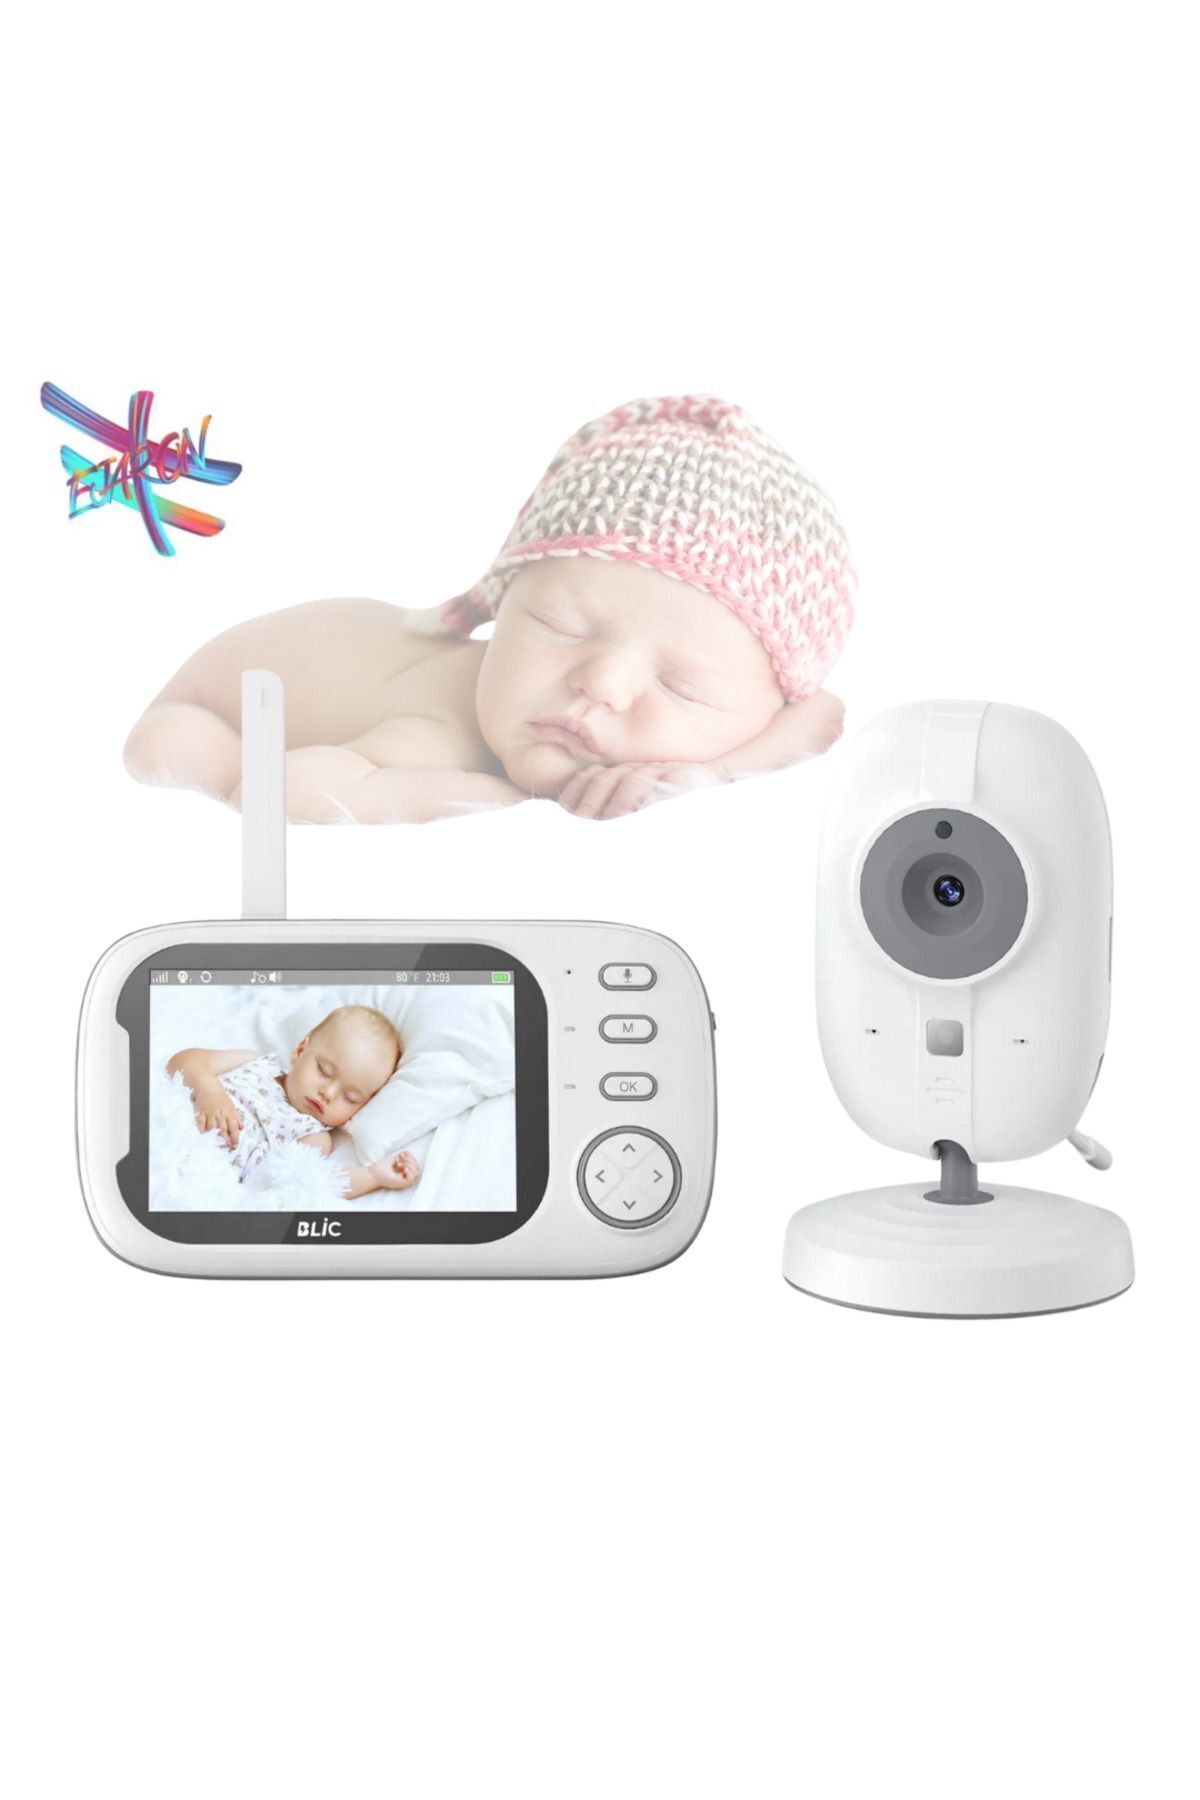 HEJARON LOBO Gece Görüşlü Bebek Monitörü -Bebek Izleme Kamerası Oda Sıcaklığı Kontrollü Kablosuz